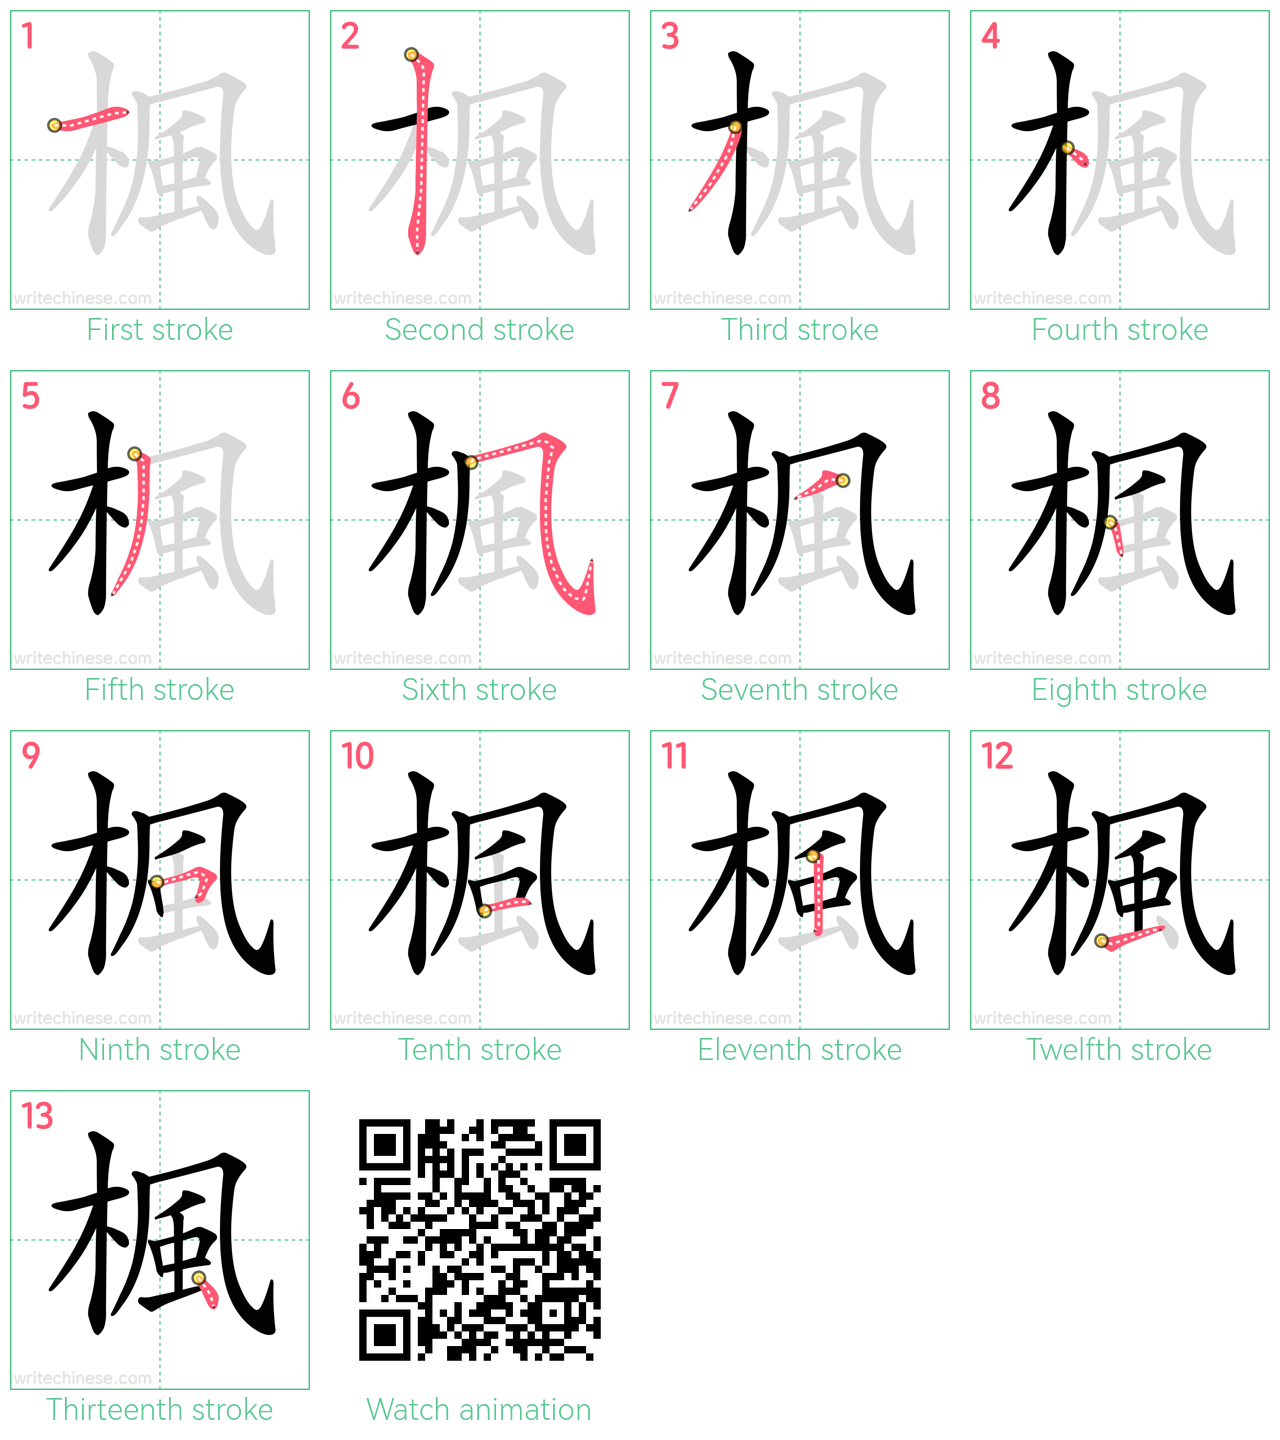 楓 step-by-step stroke order diagrams